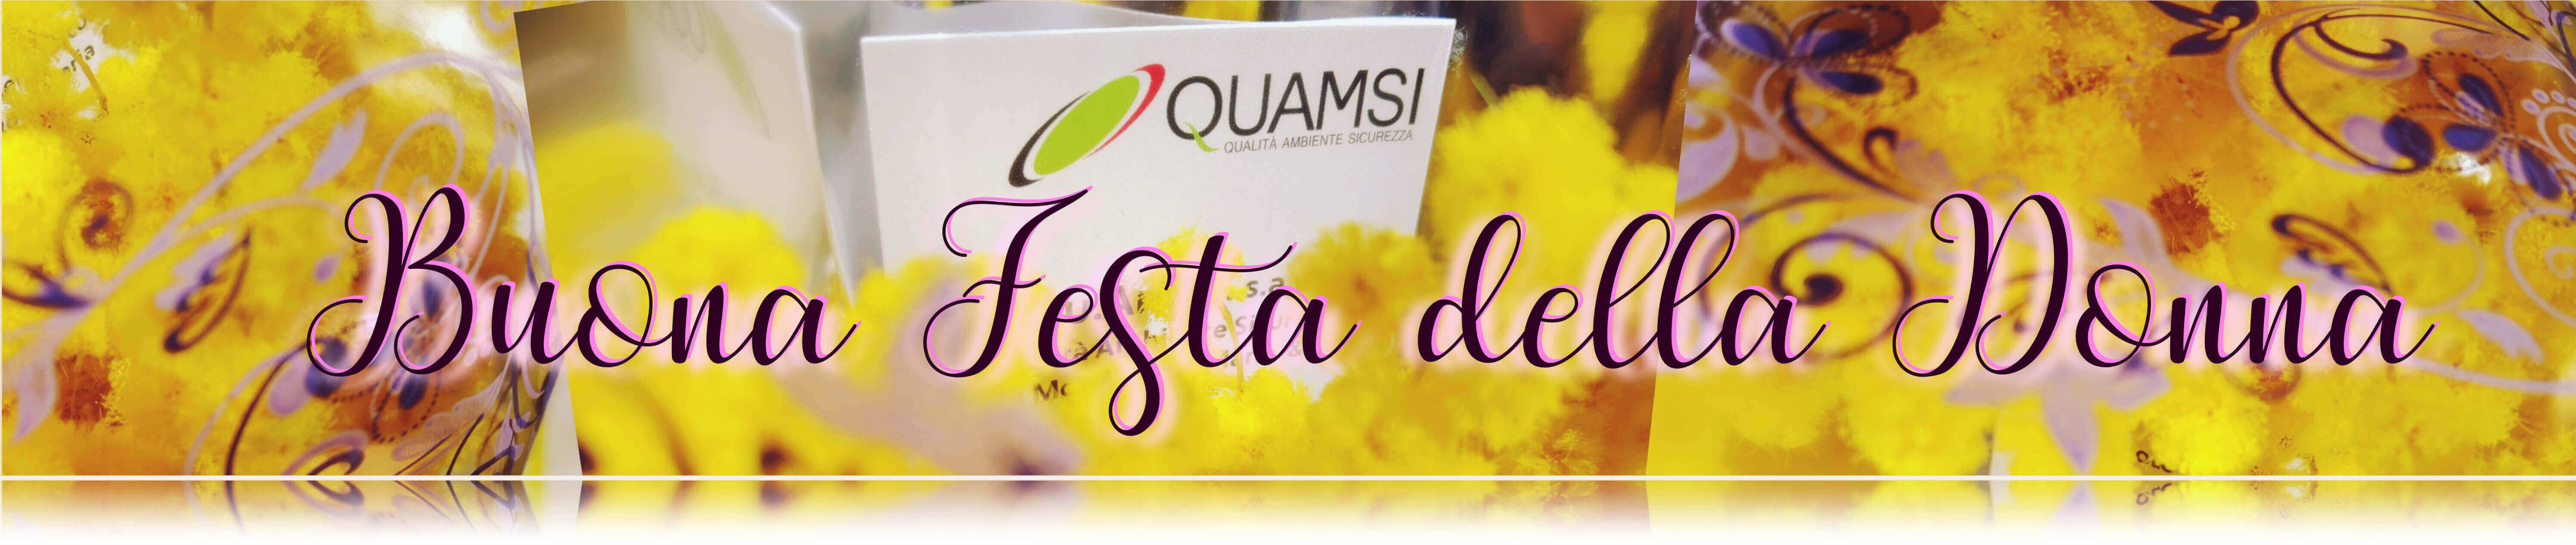 Festa della donna - auguri da QUAMSI con mimosa su sfondo